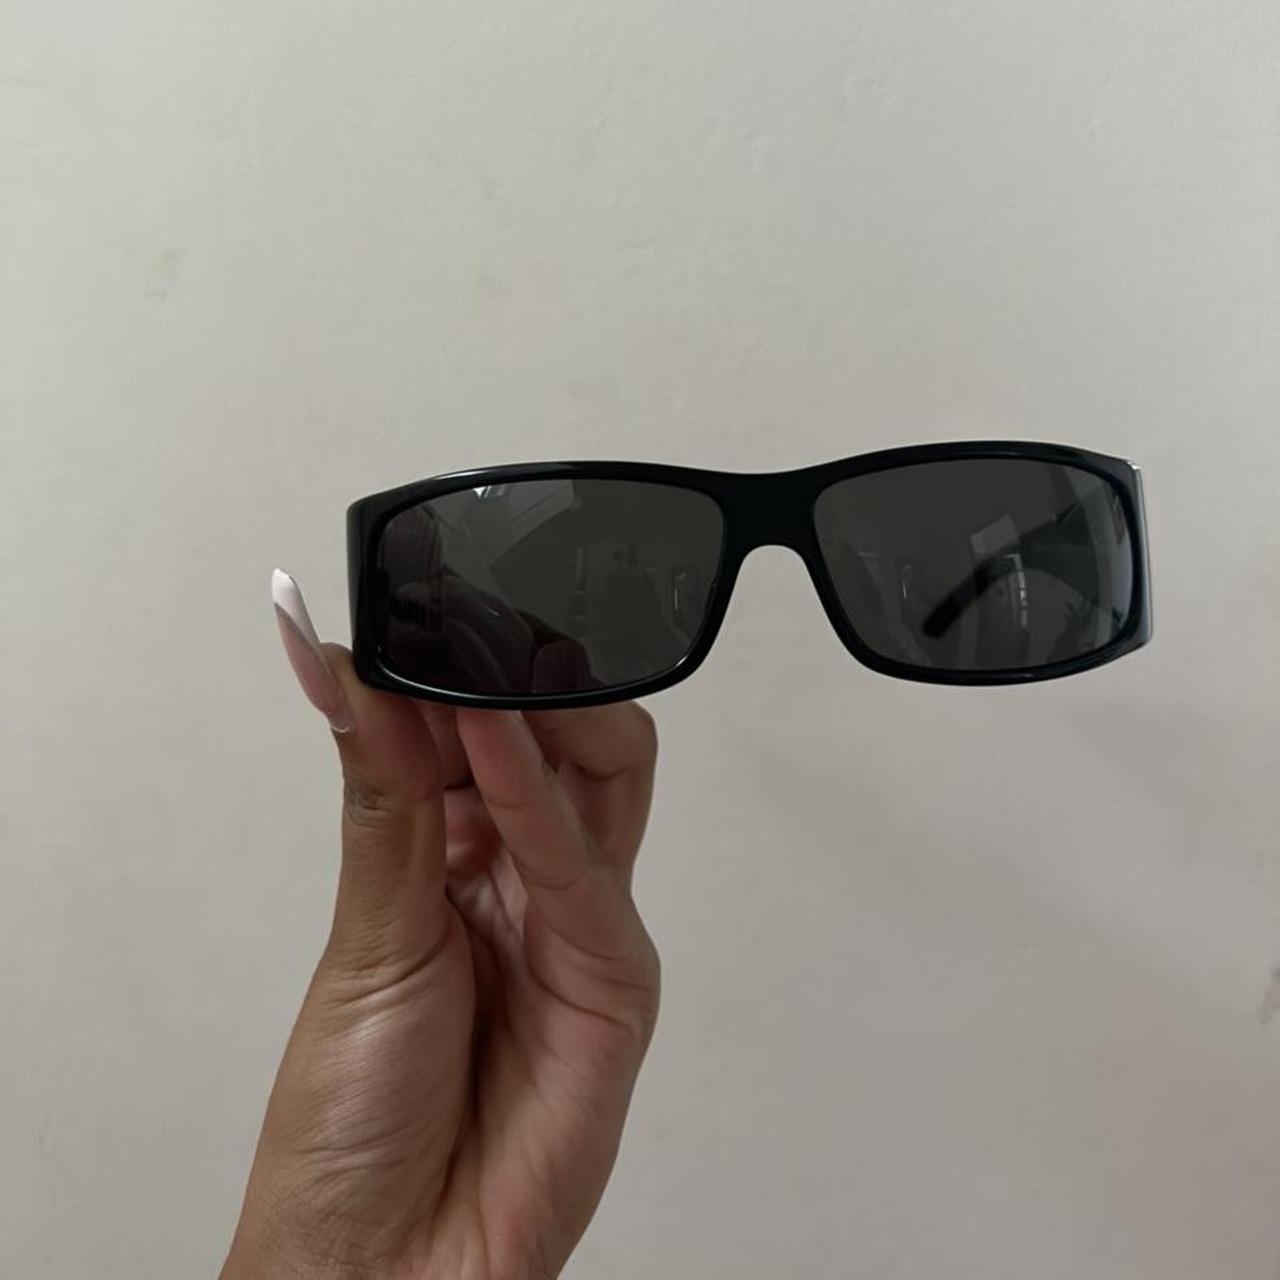 OFFERS 190+ Vintage ‘Your dior 2’ sunglasses Black... - Depop